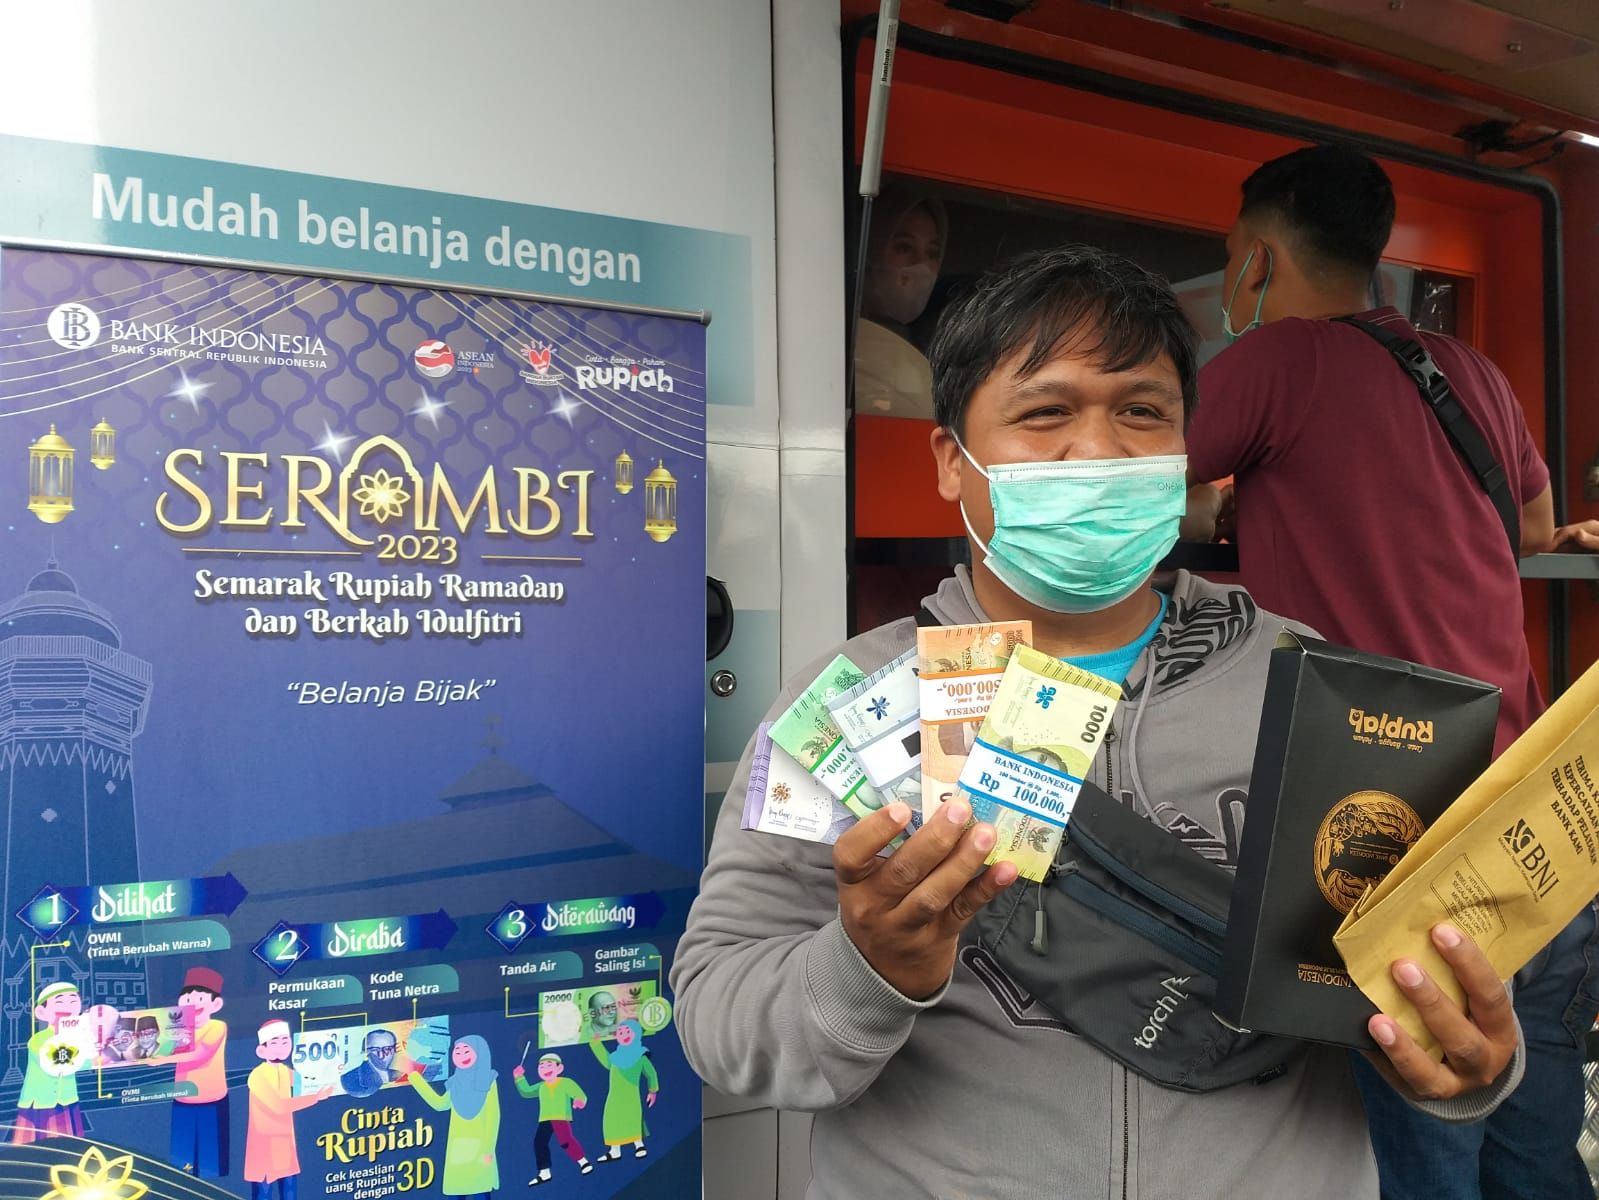 Bank Indonesia Kediri Buka Program Serambi untuk Layani Penukaran Uang emisi Baru jelang Lebaran/Kabar Banten/Rizki Putri